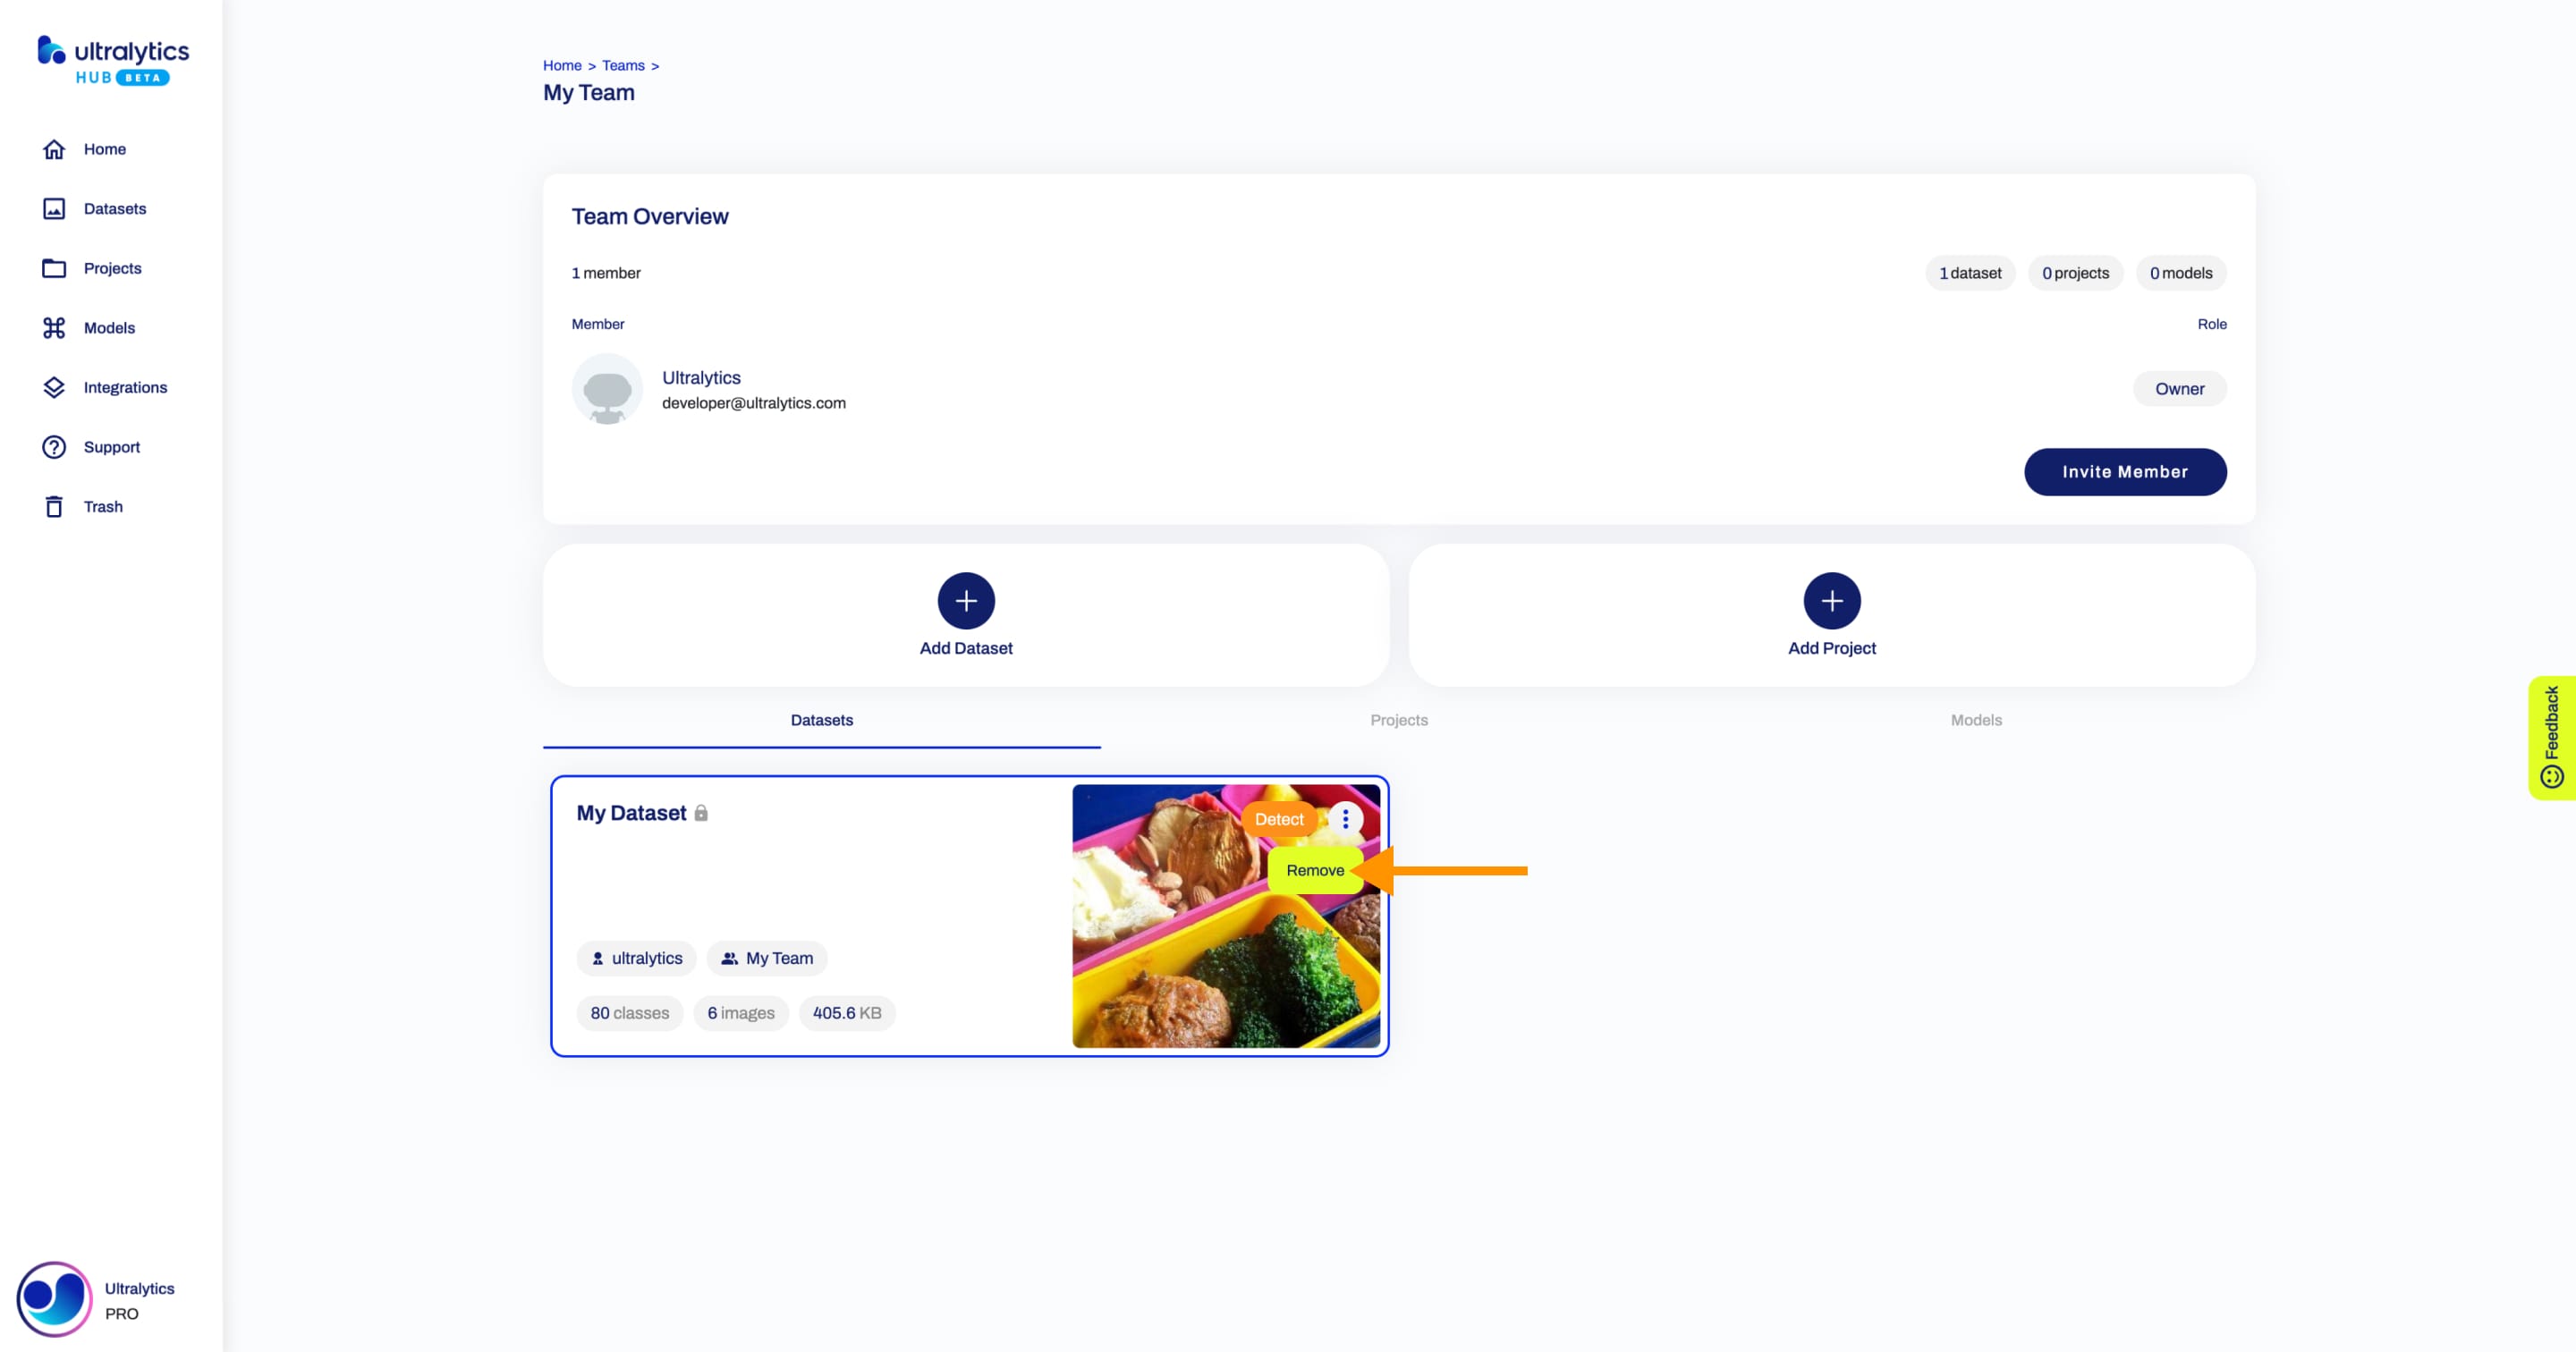 Ultralytics Captura de pantalla HUB de la página Equipo con una flecha señalando la opción Eliminar de uno de los conjuntos de datos compartidos